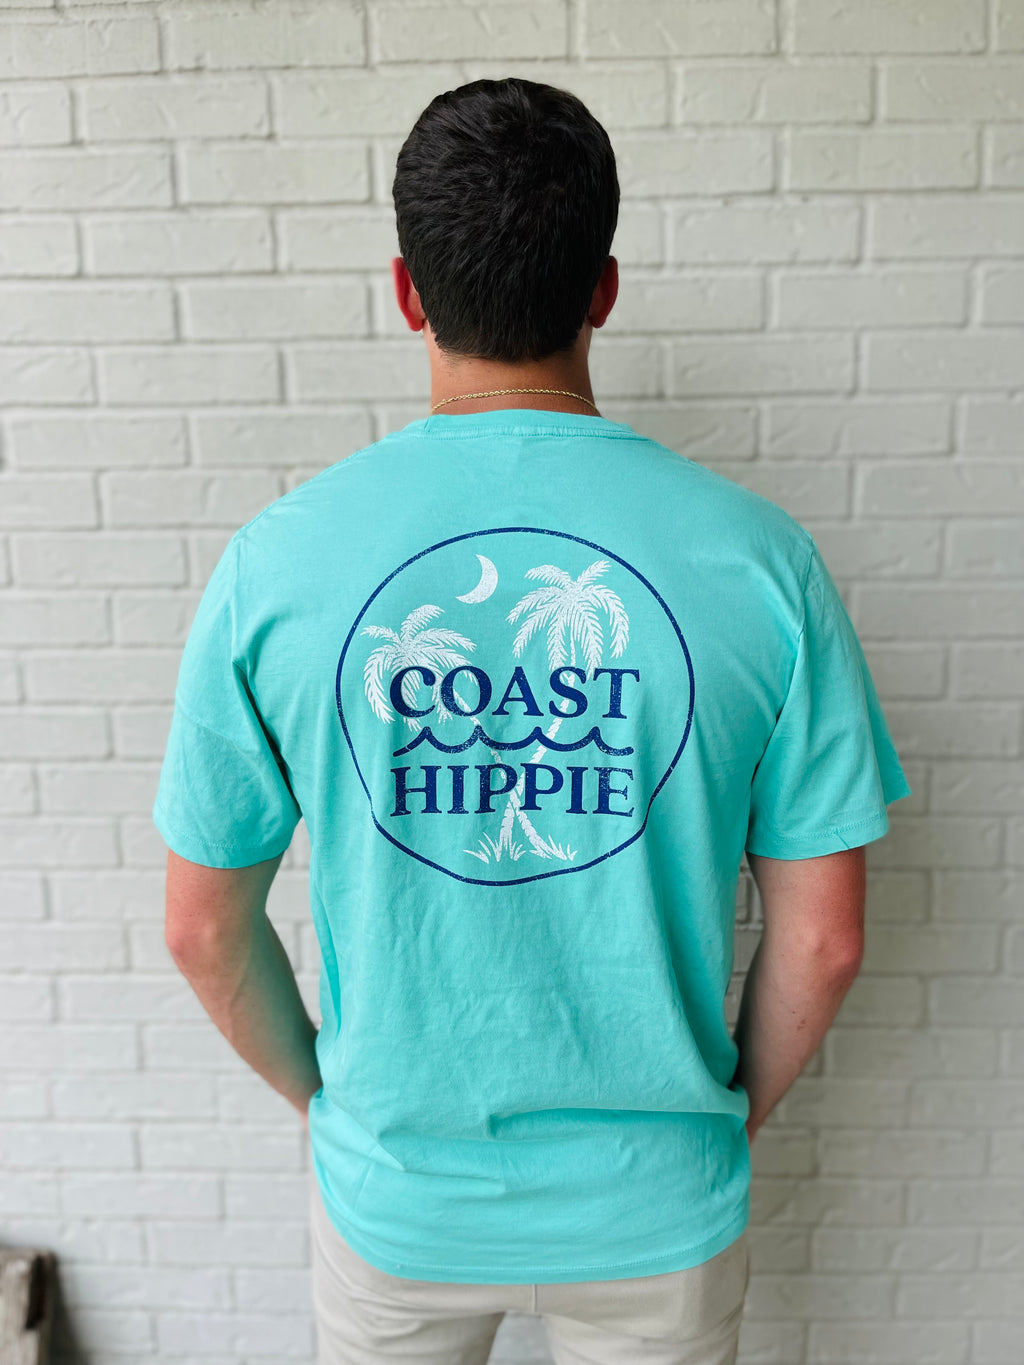 Coast Hippie:  Double Crossed